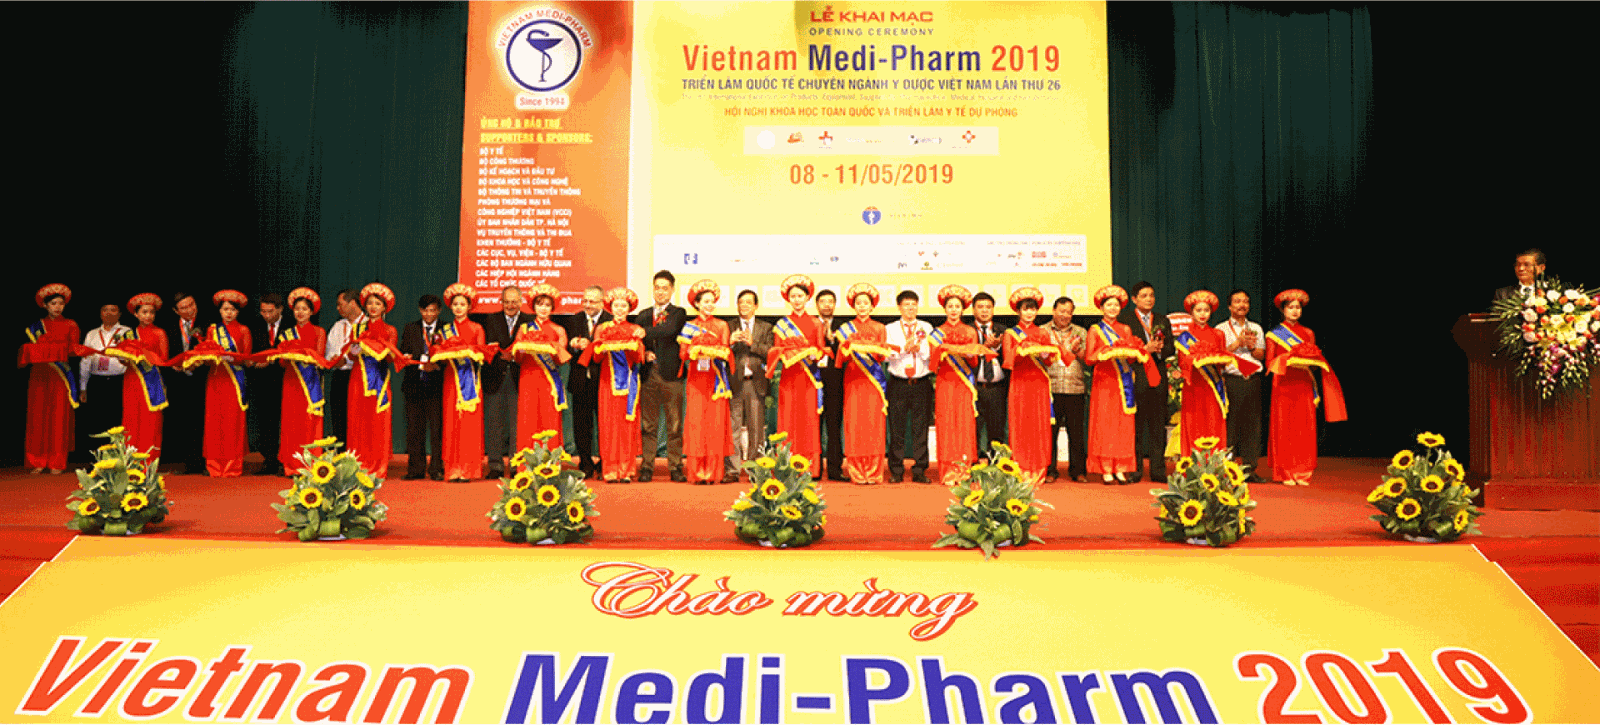 Vietnam Medi-pharm 2019